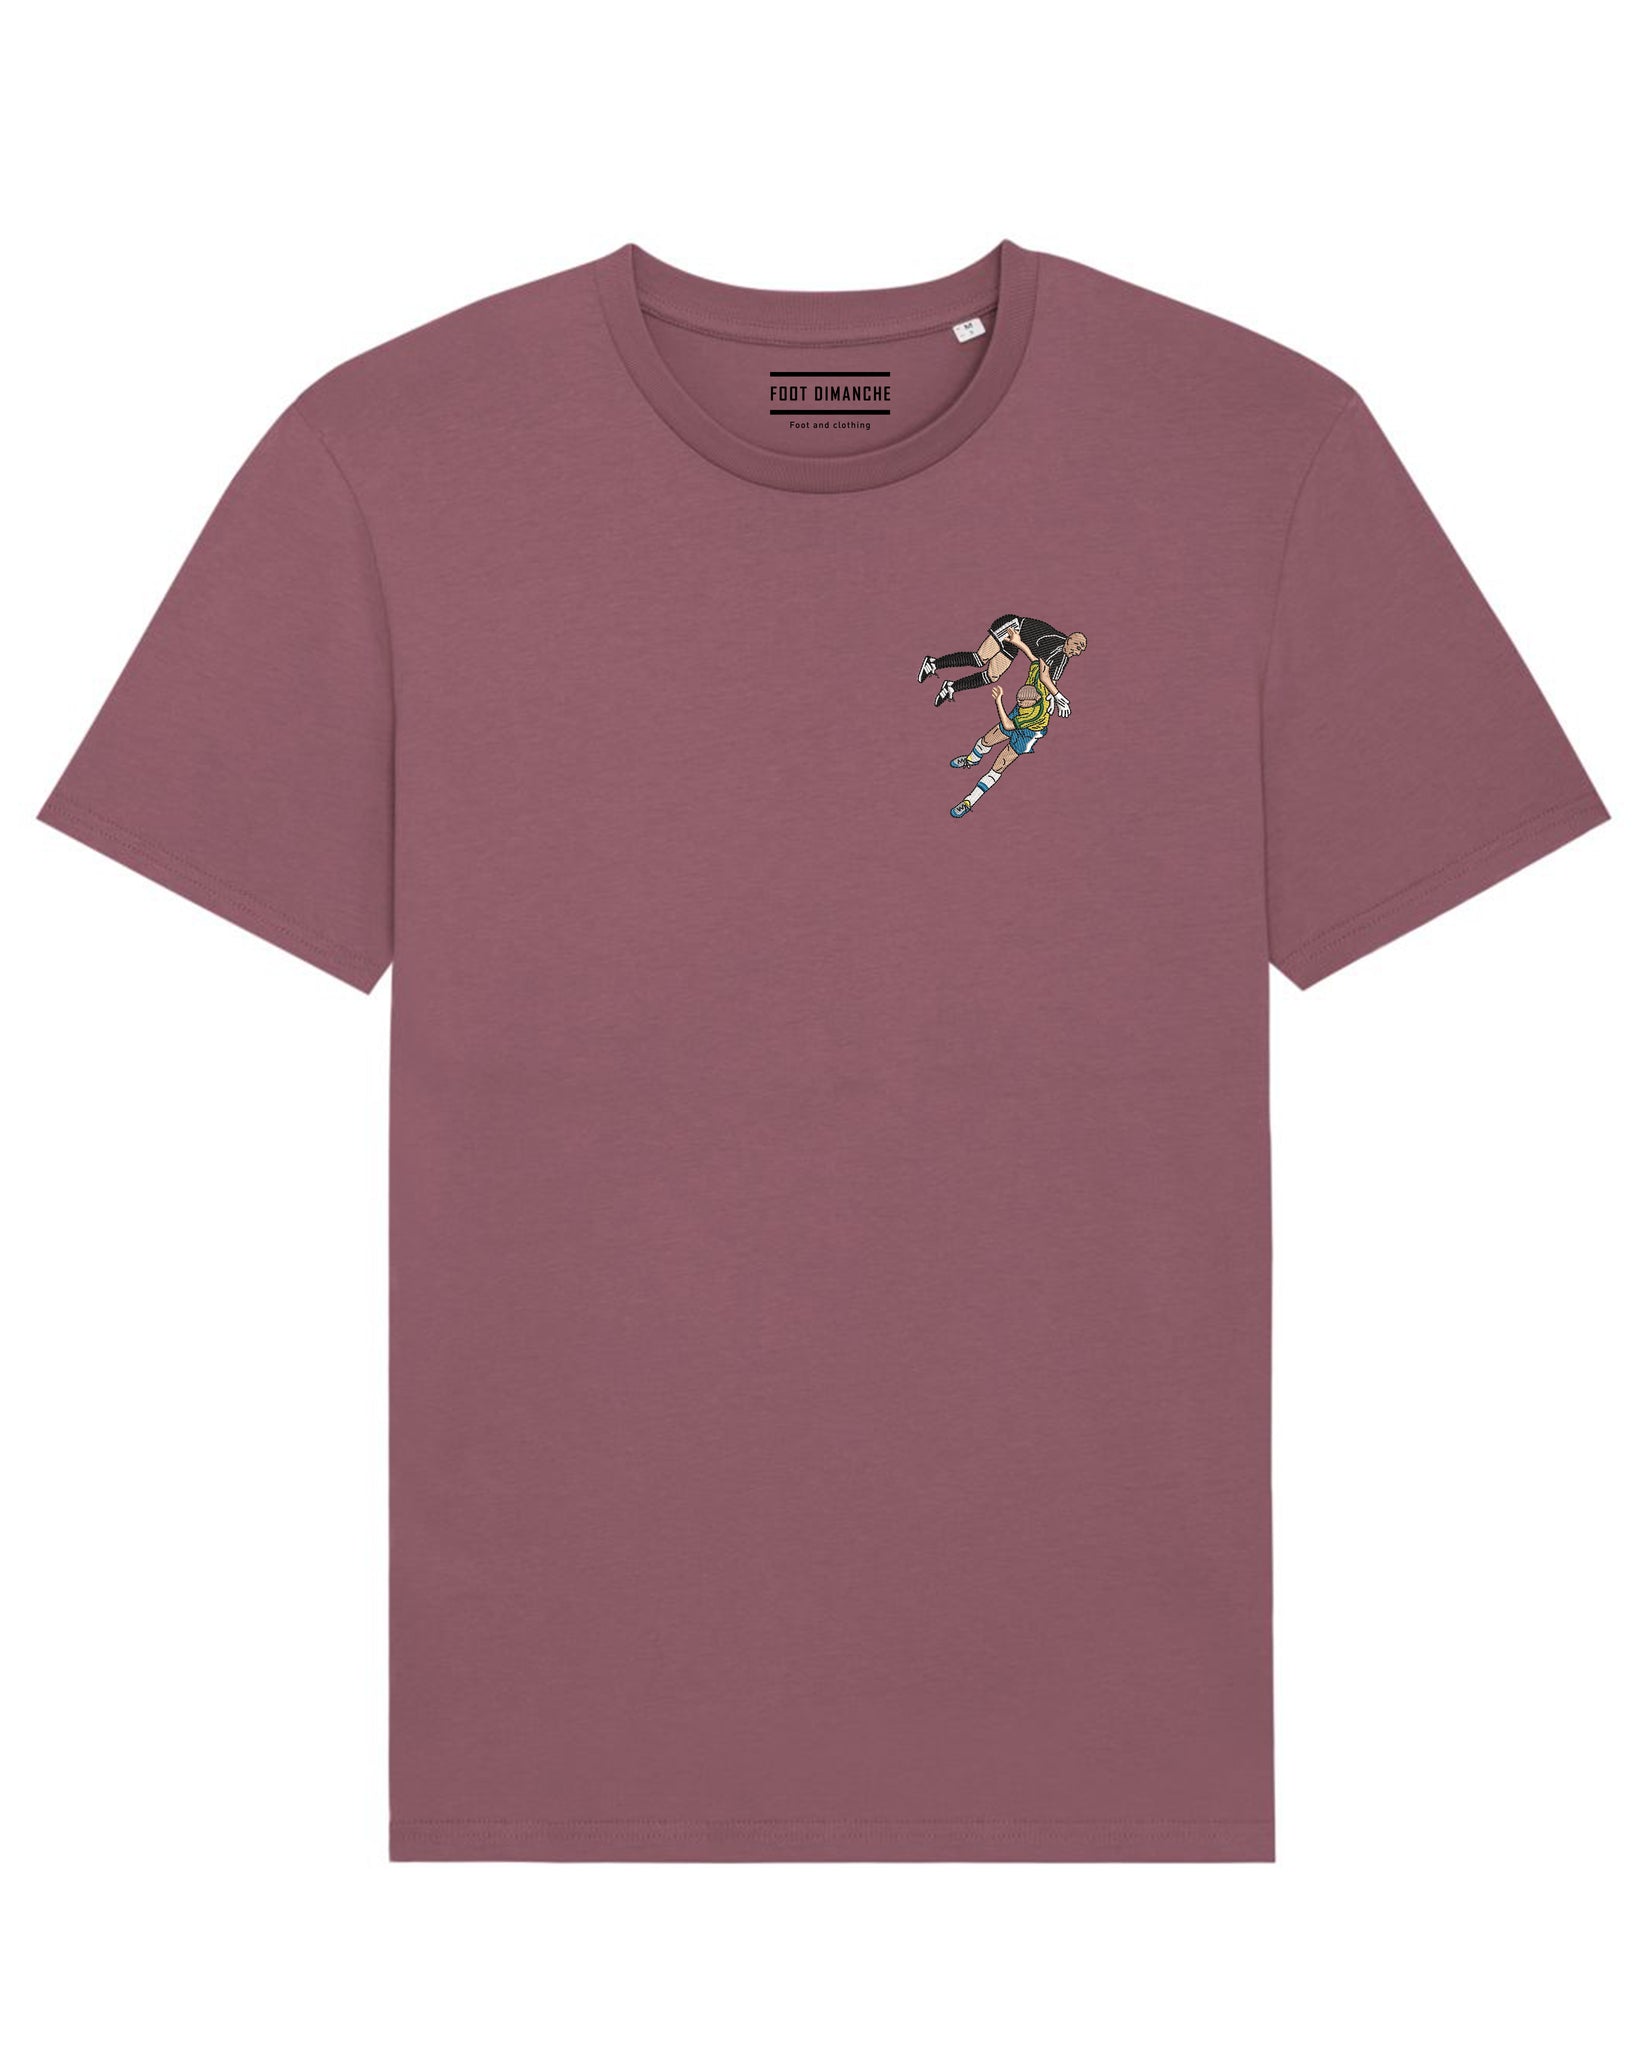 Tee Shirt Barthez